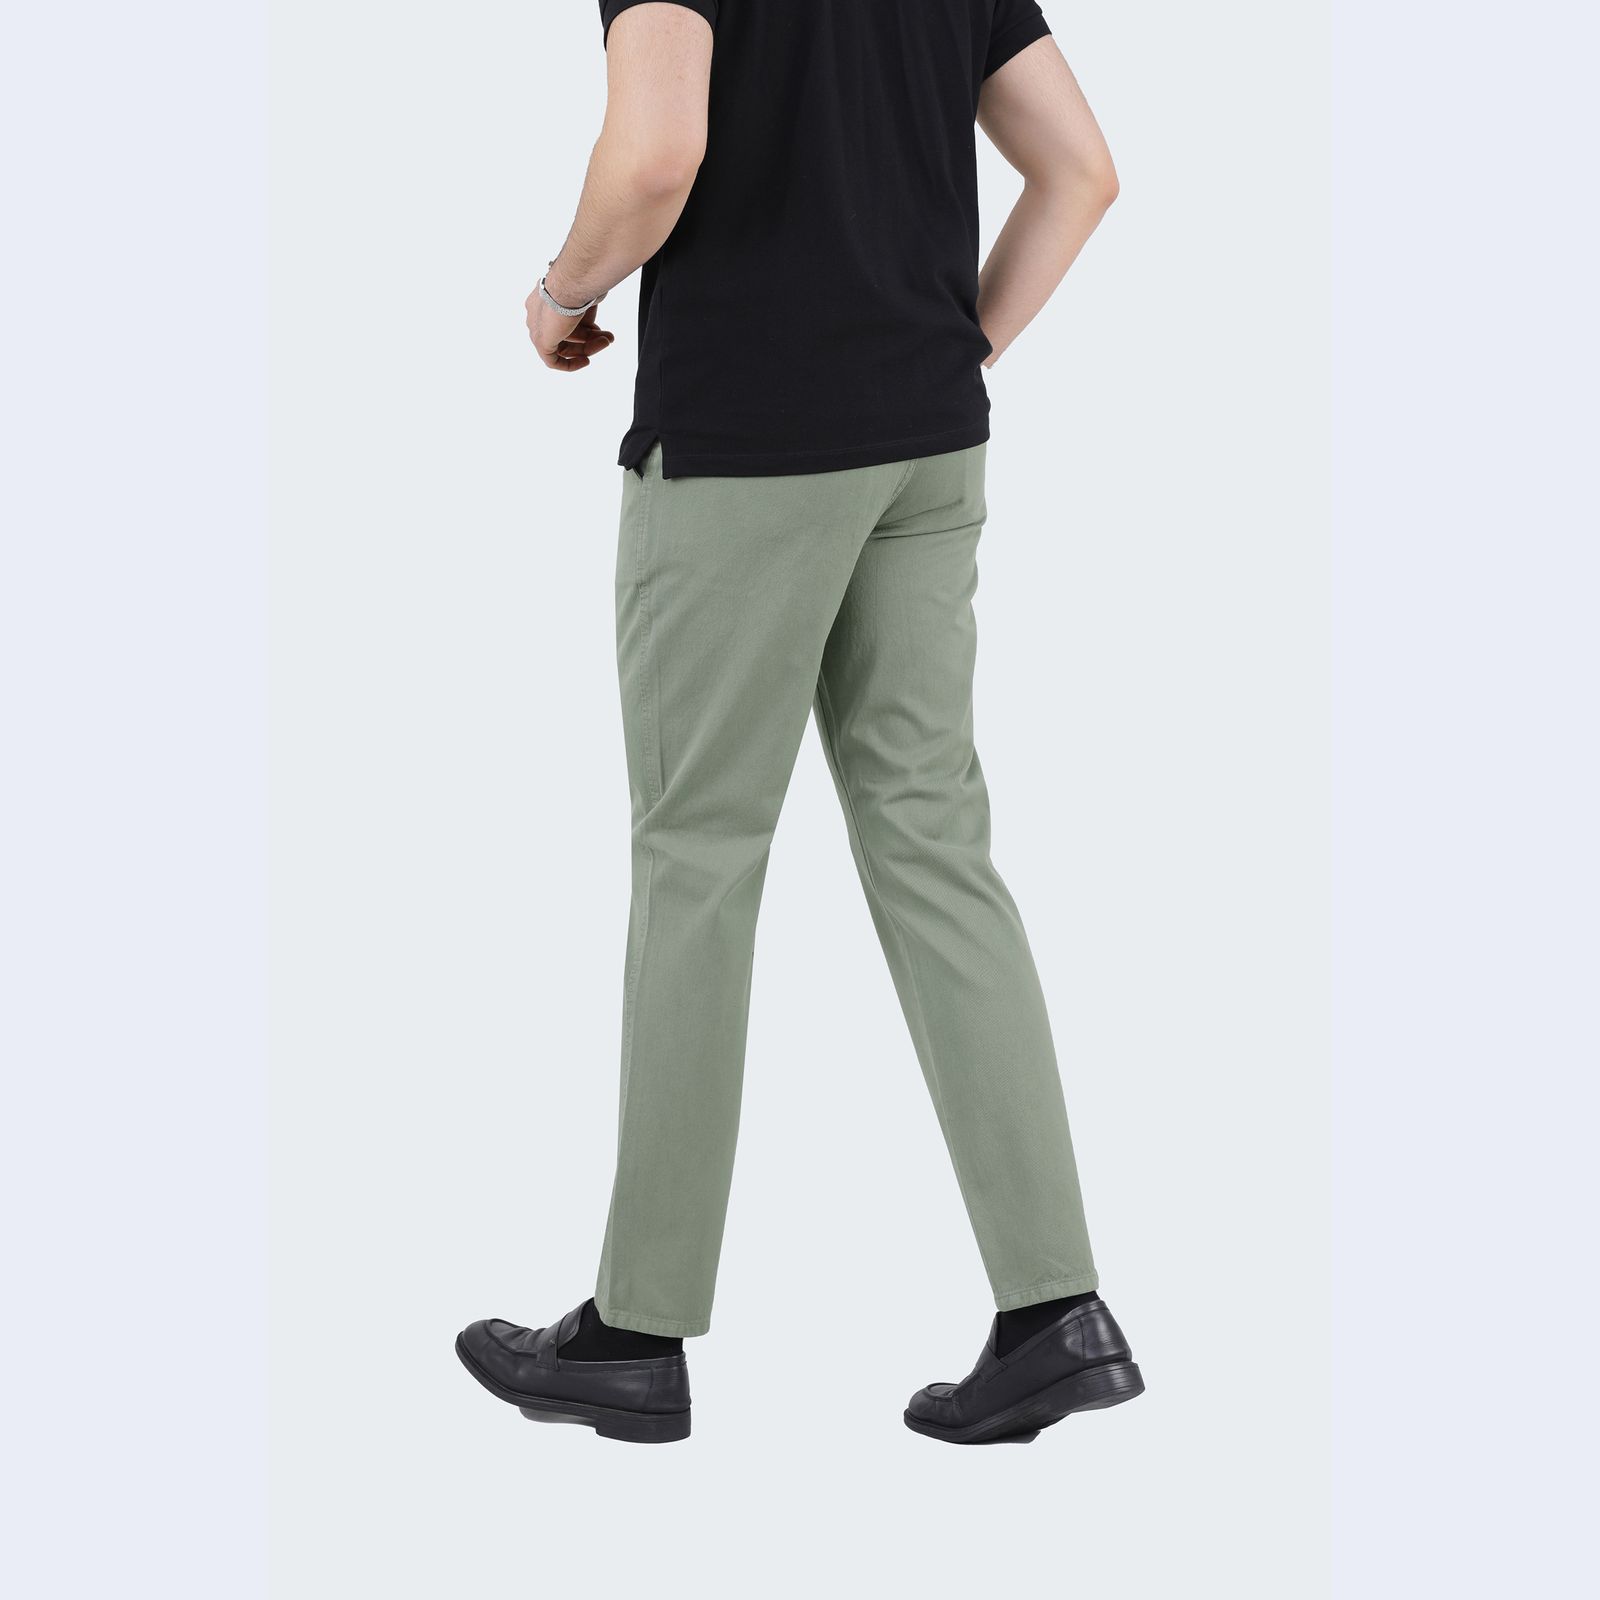 شلوار مردانه پاتن جامه مدل کتان کد 101221020006377 رنگ سبز روشن -  - 4